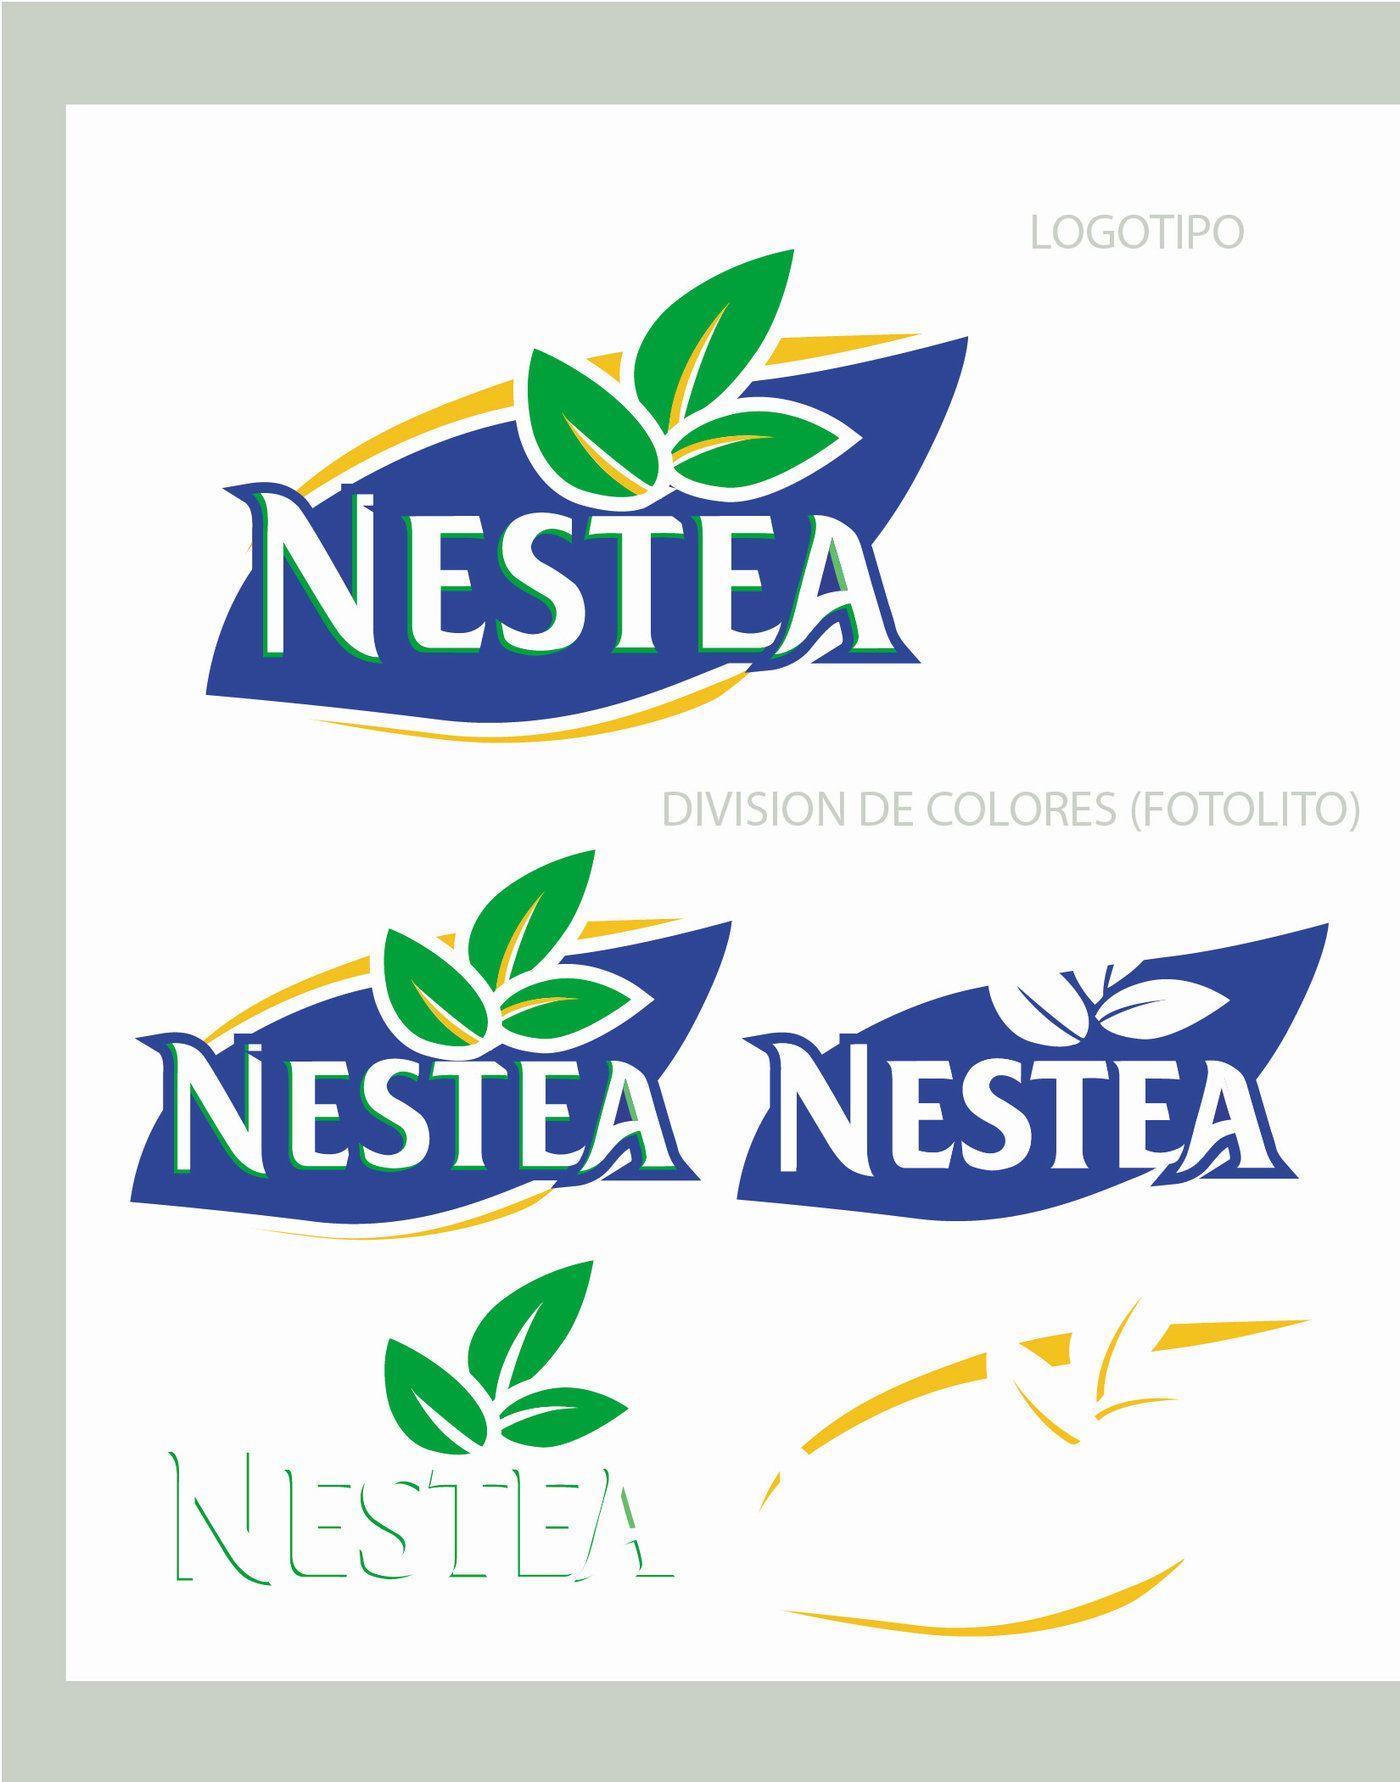 Nestea Logo - GRAPHICS Nestea Logo Modifications by Mariana Farinas at Coroflot.com